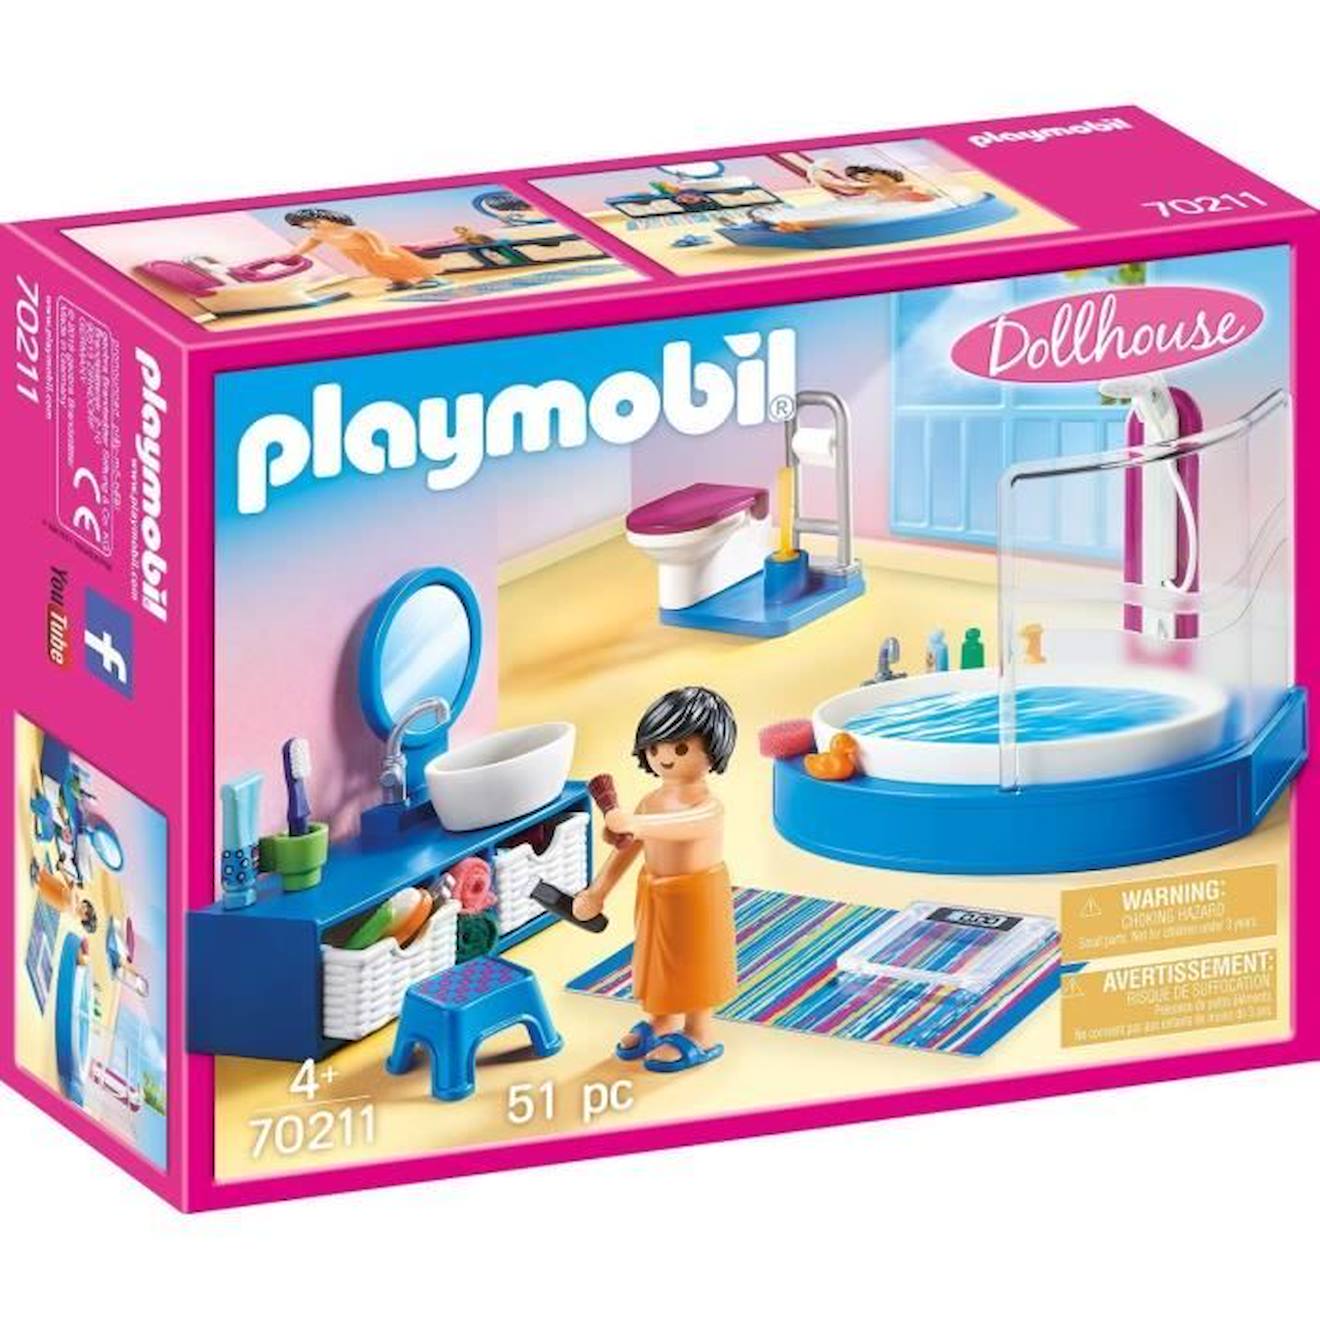 Playmobil - 70211 - Dollhouse La Maison Traditionnelle - Salle De Bain Avec Baignoire Orange